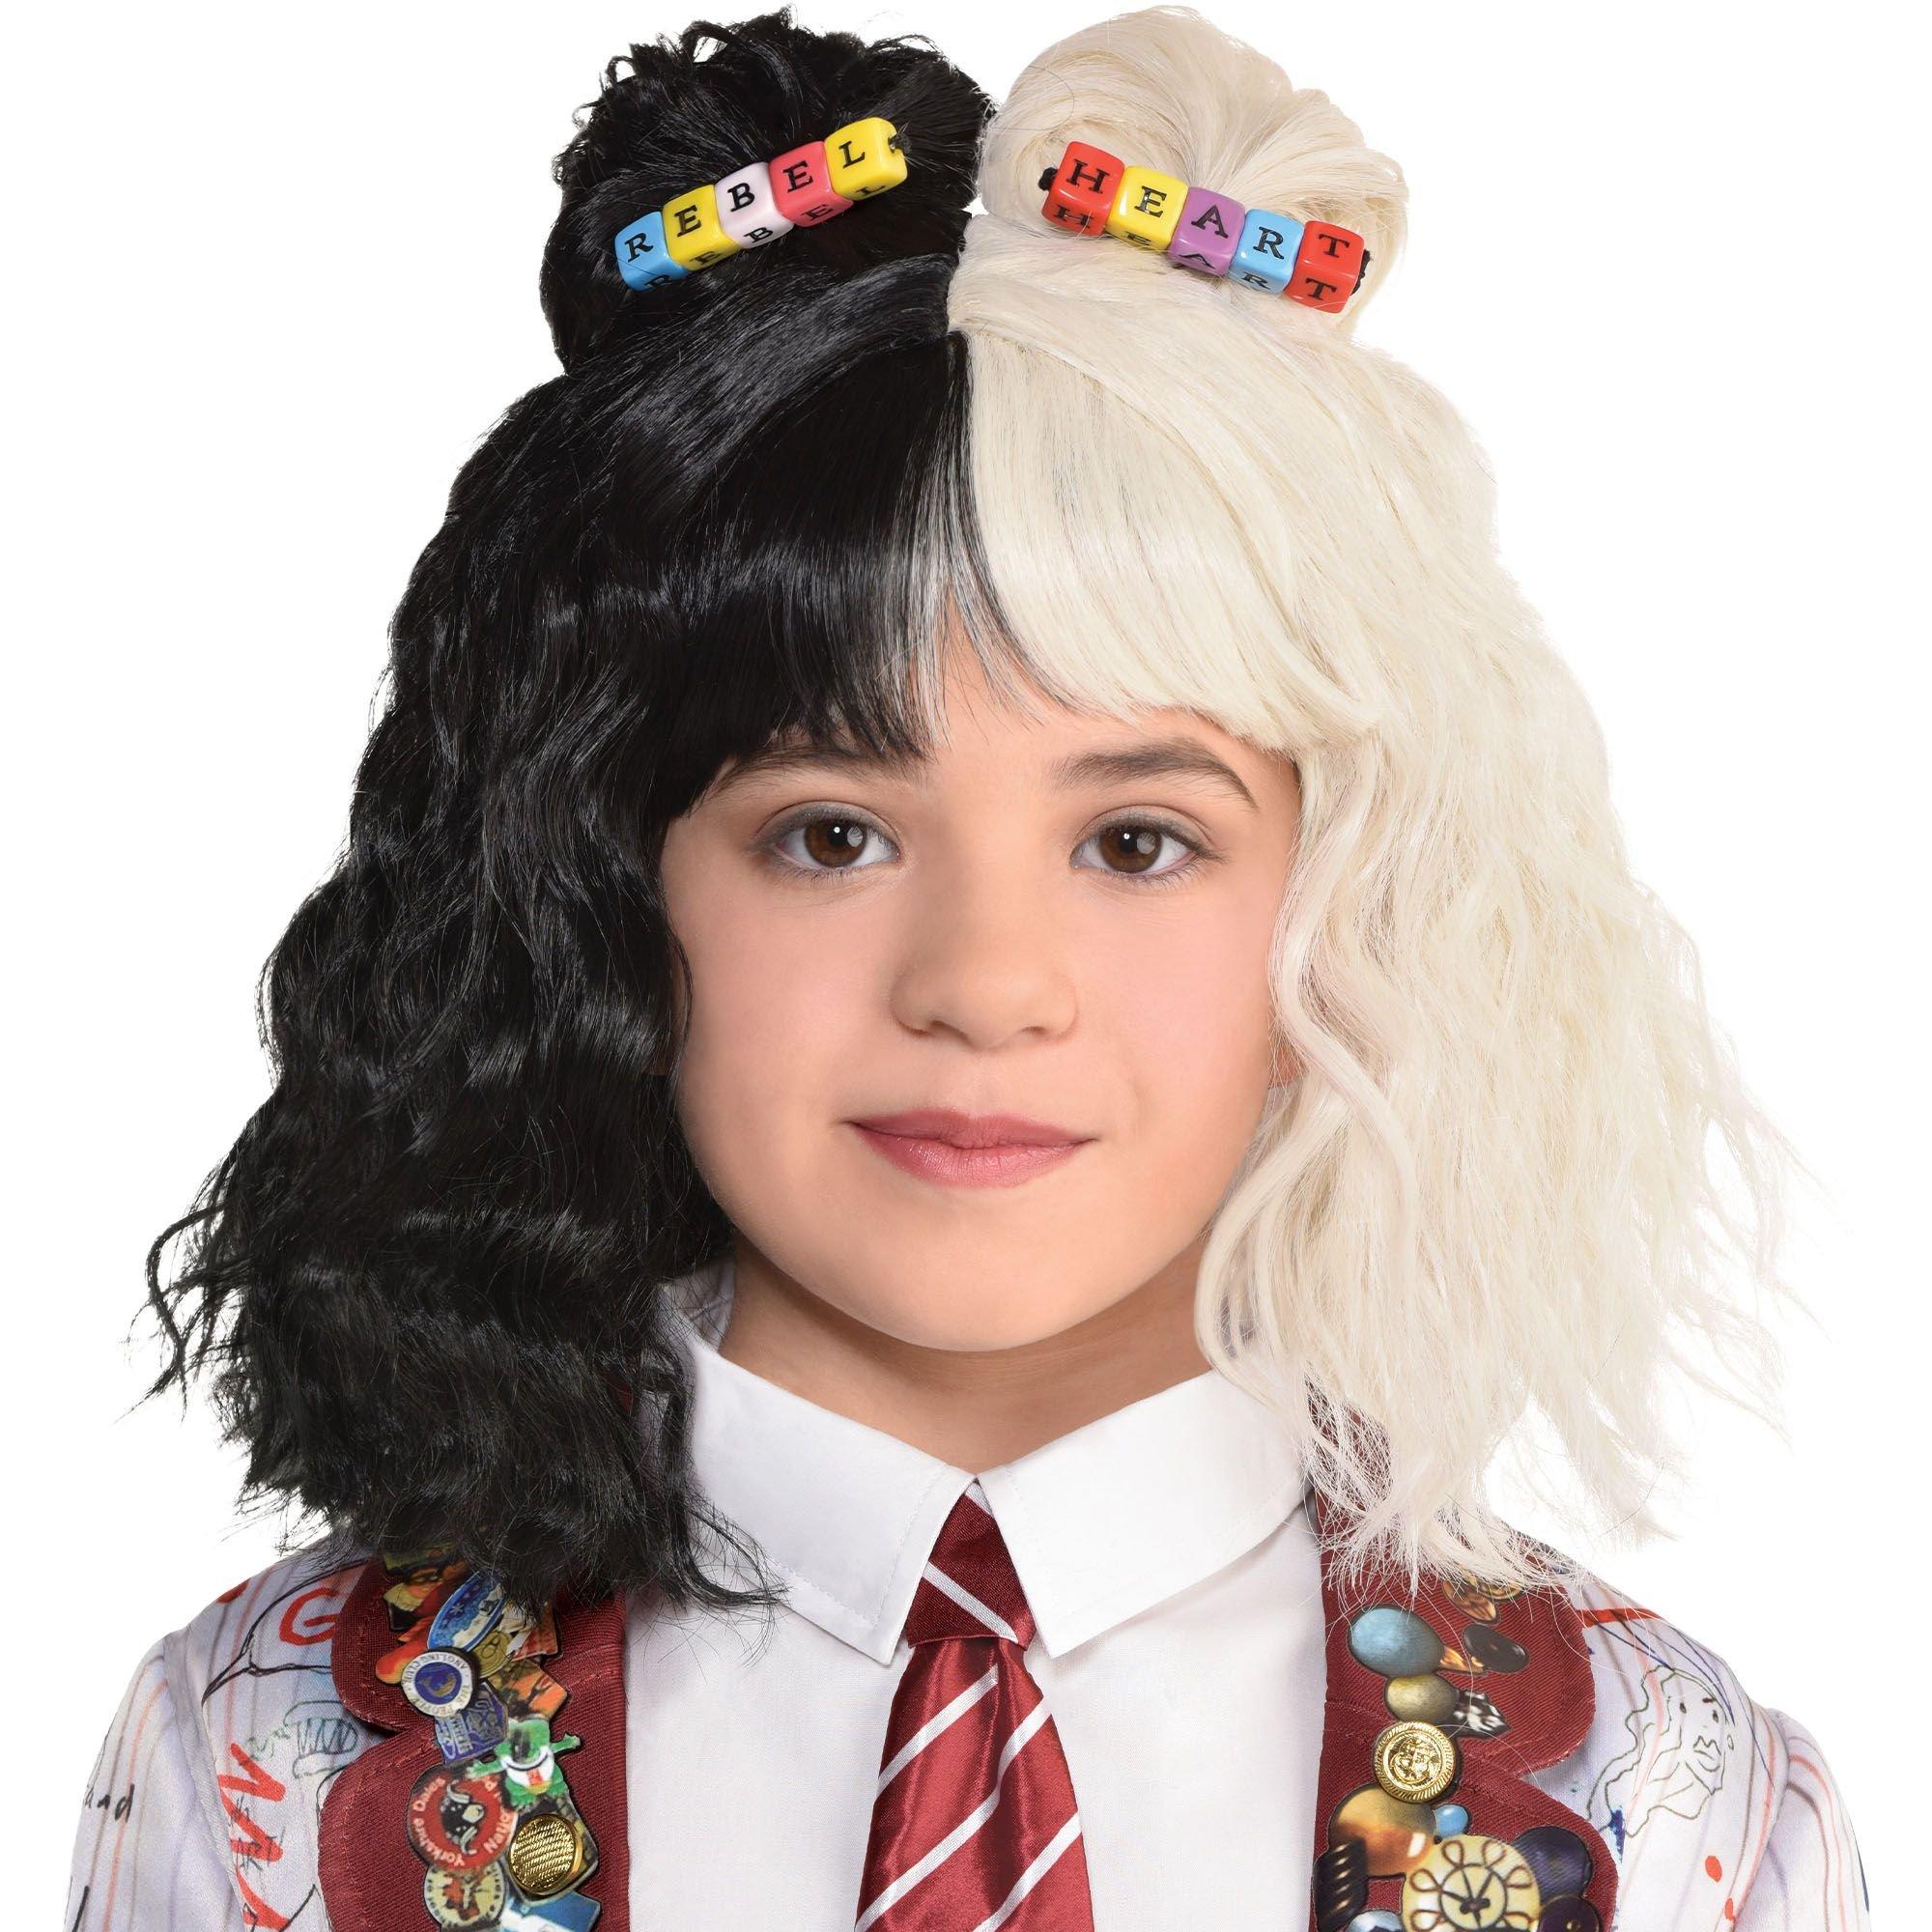 Estella School Uniform Costume Accessory Kit for Kids - Disney Cruella